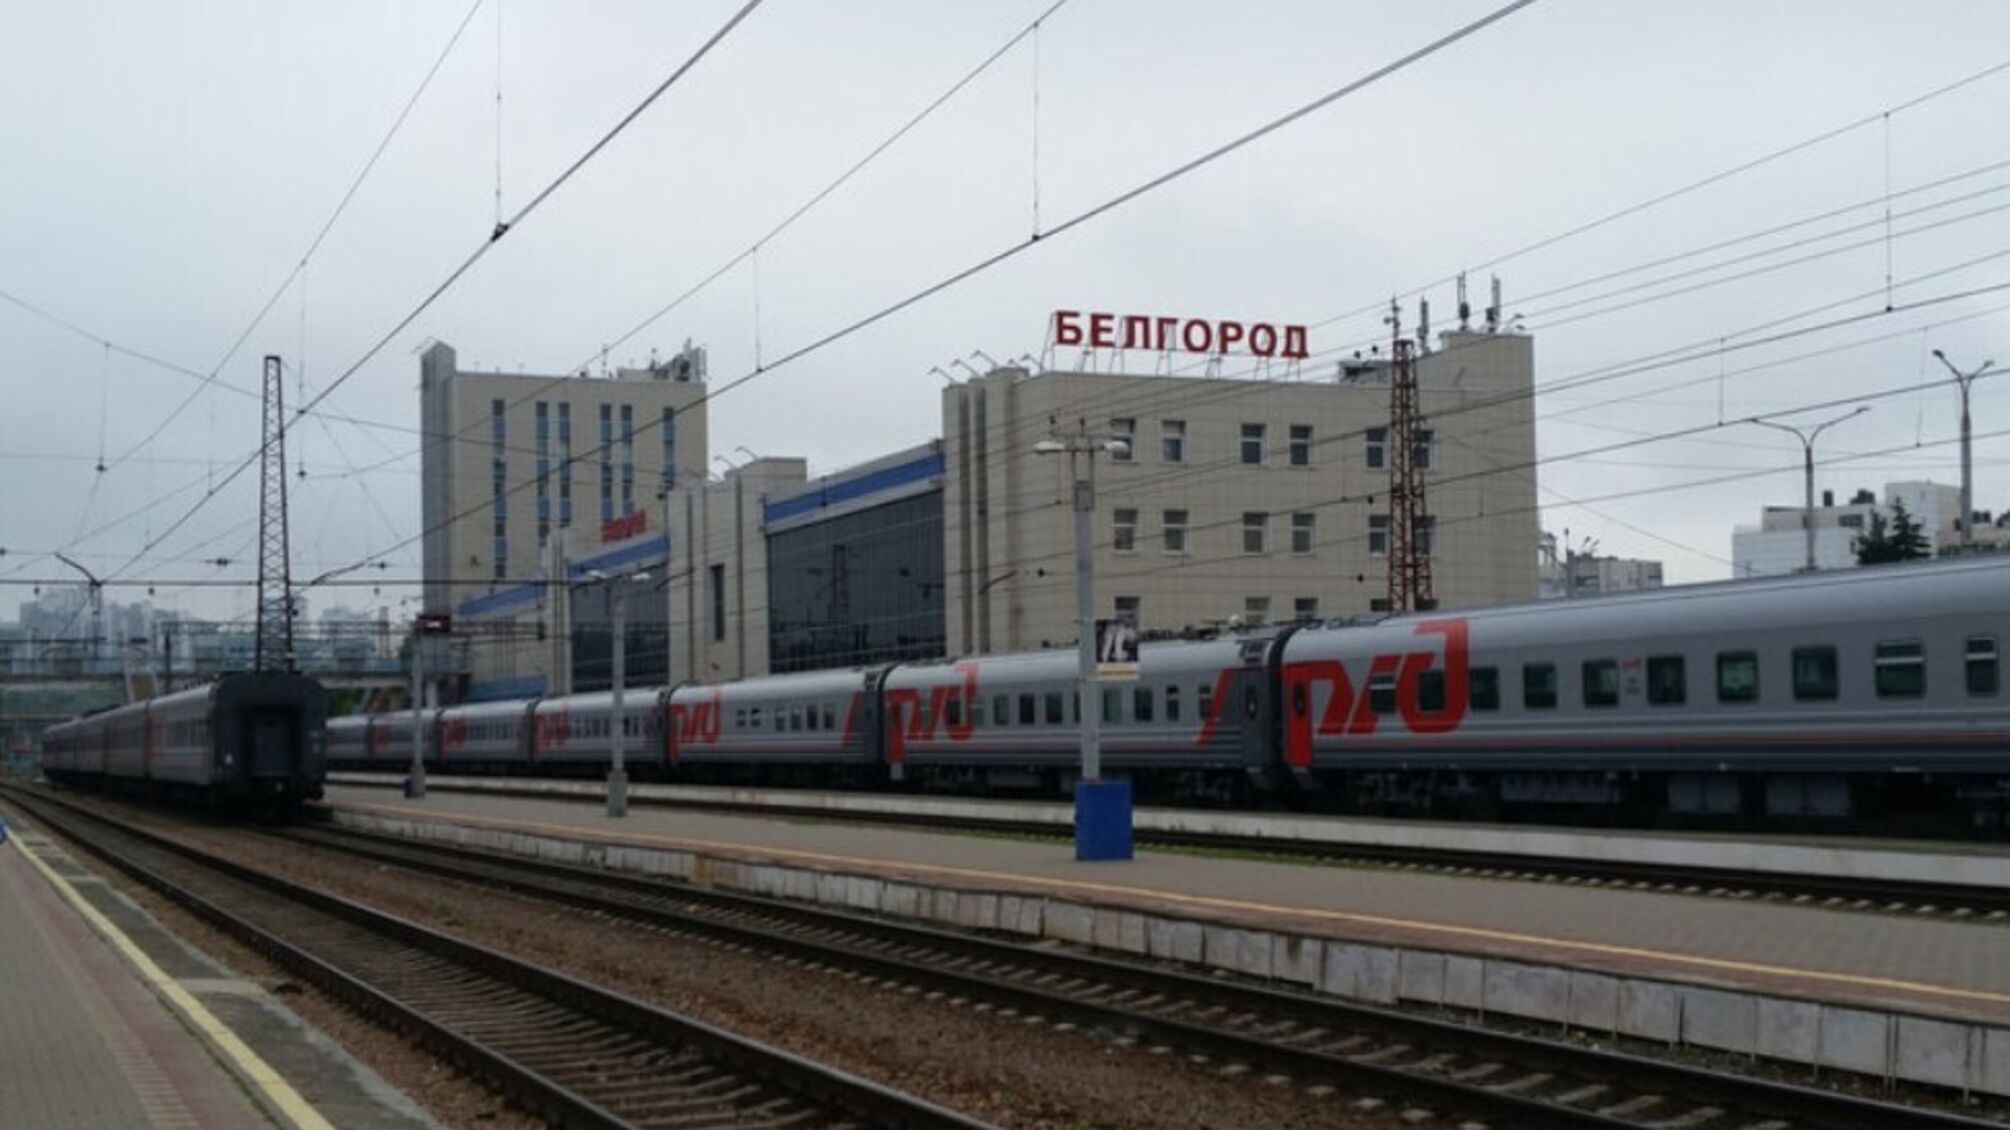 У Білгородській області тимчасово зупинено рух поїздів через обстріл, - росЗМІ